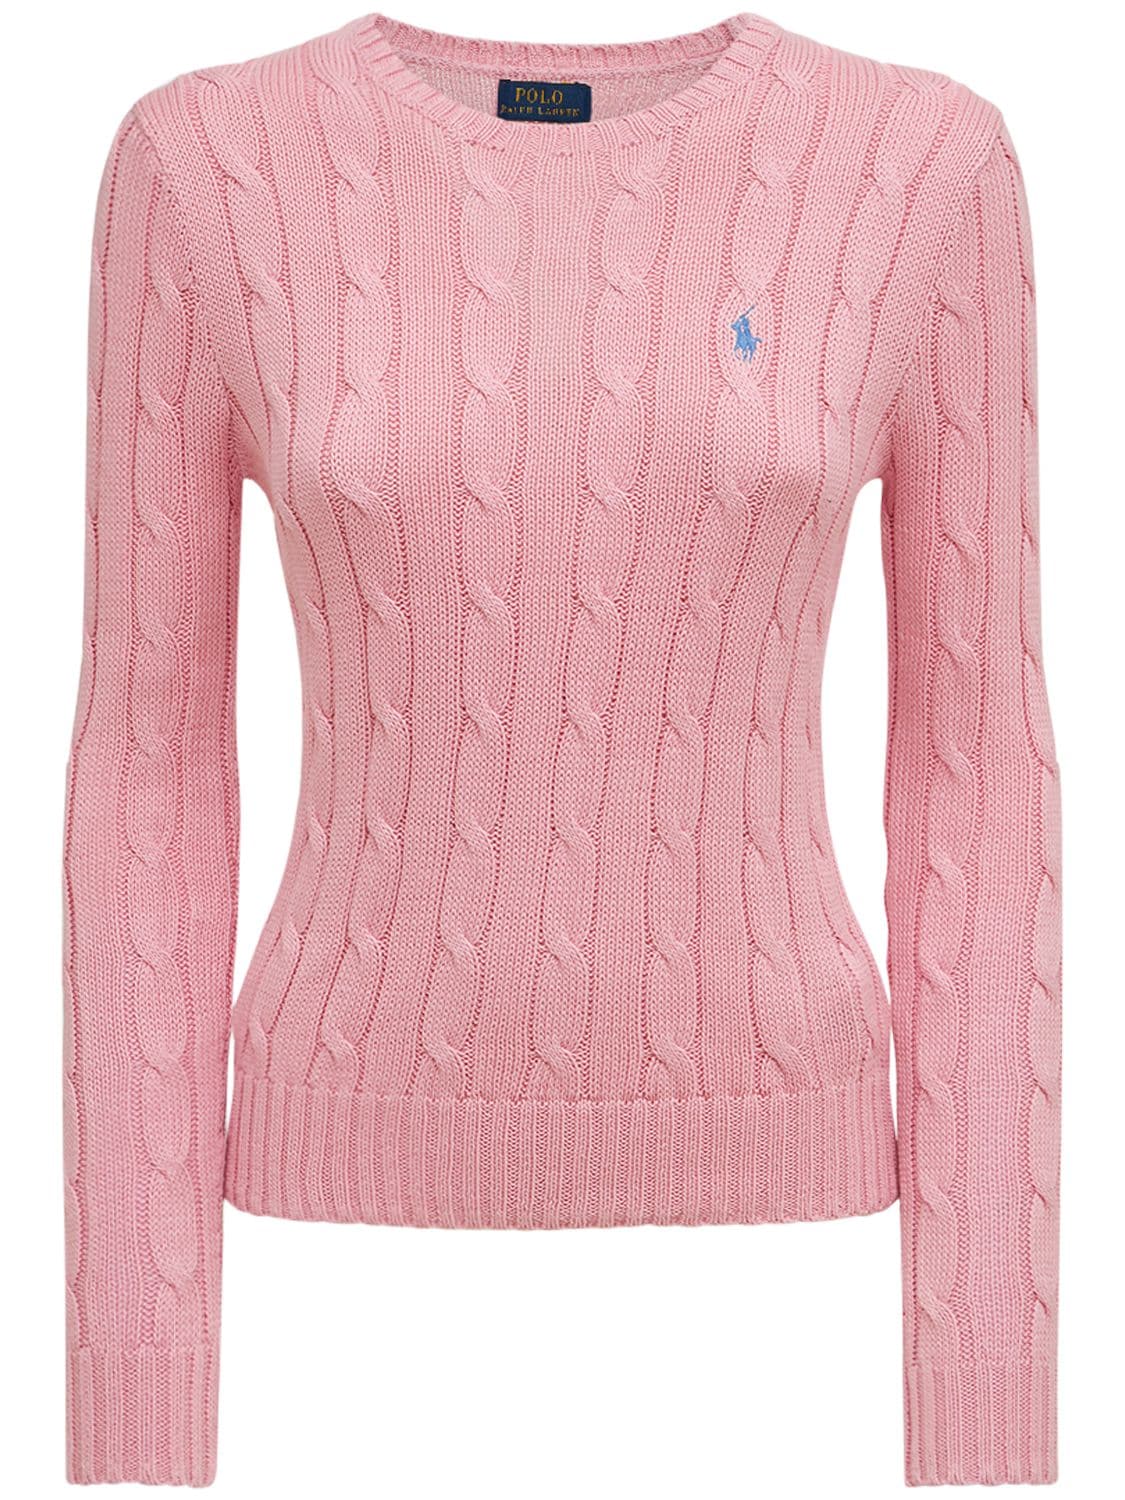 Polo Ralph Lauren Juliana Braided Knit Sweater | ModeSens